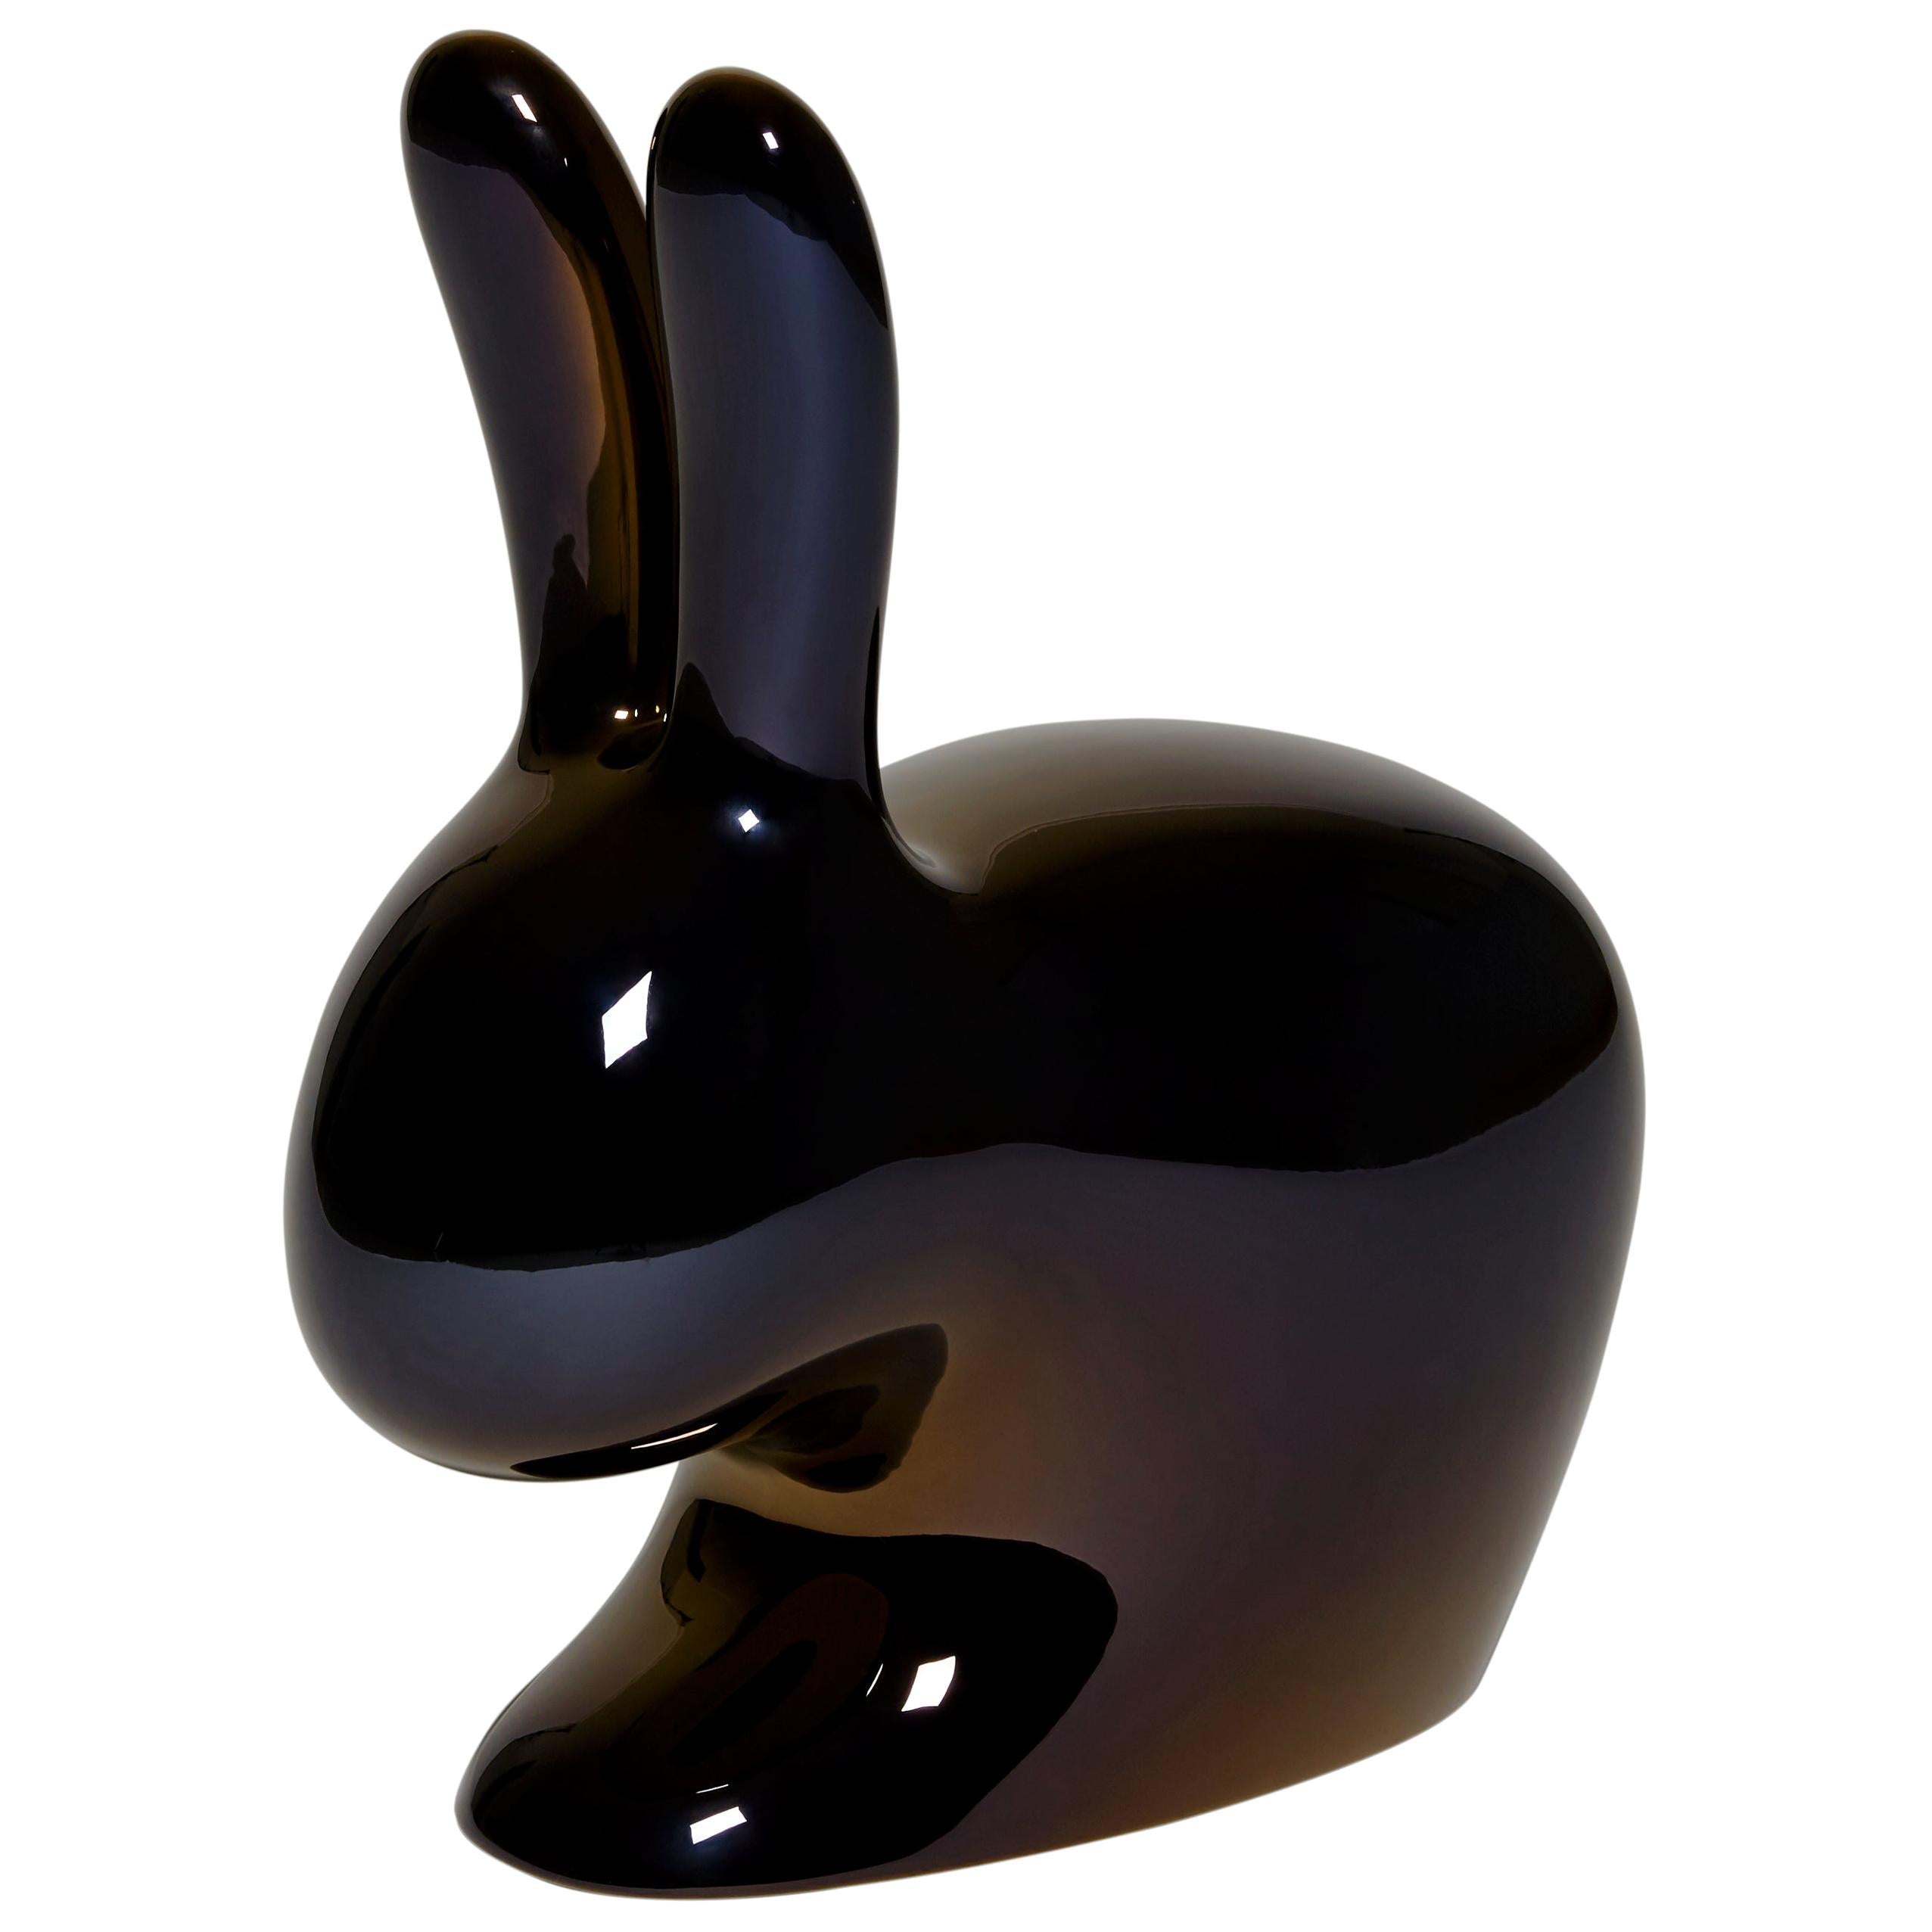 En vente : Black (Black Pearl) Chaise lapin décorative et sculpturale moderne à finition métallique